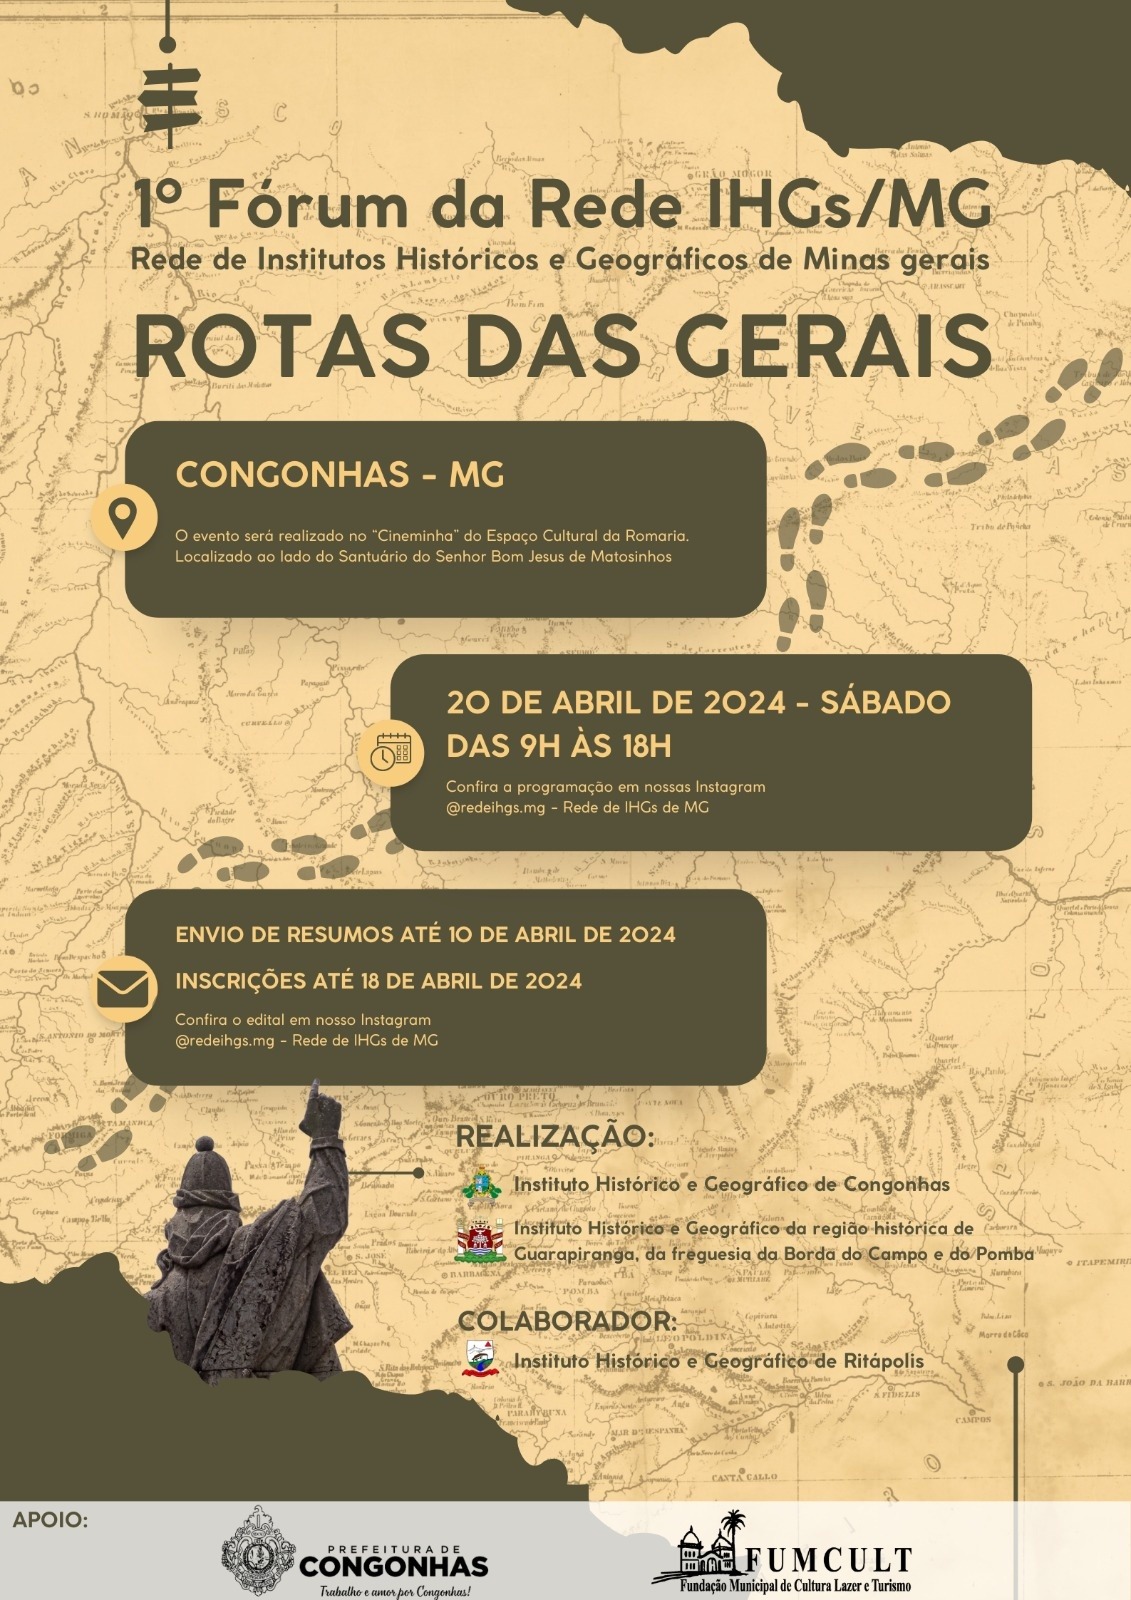 1º Fórum da Rede de Institutos Históricos e Geográficos de Minas Gerais, “Rotas das Gerais”